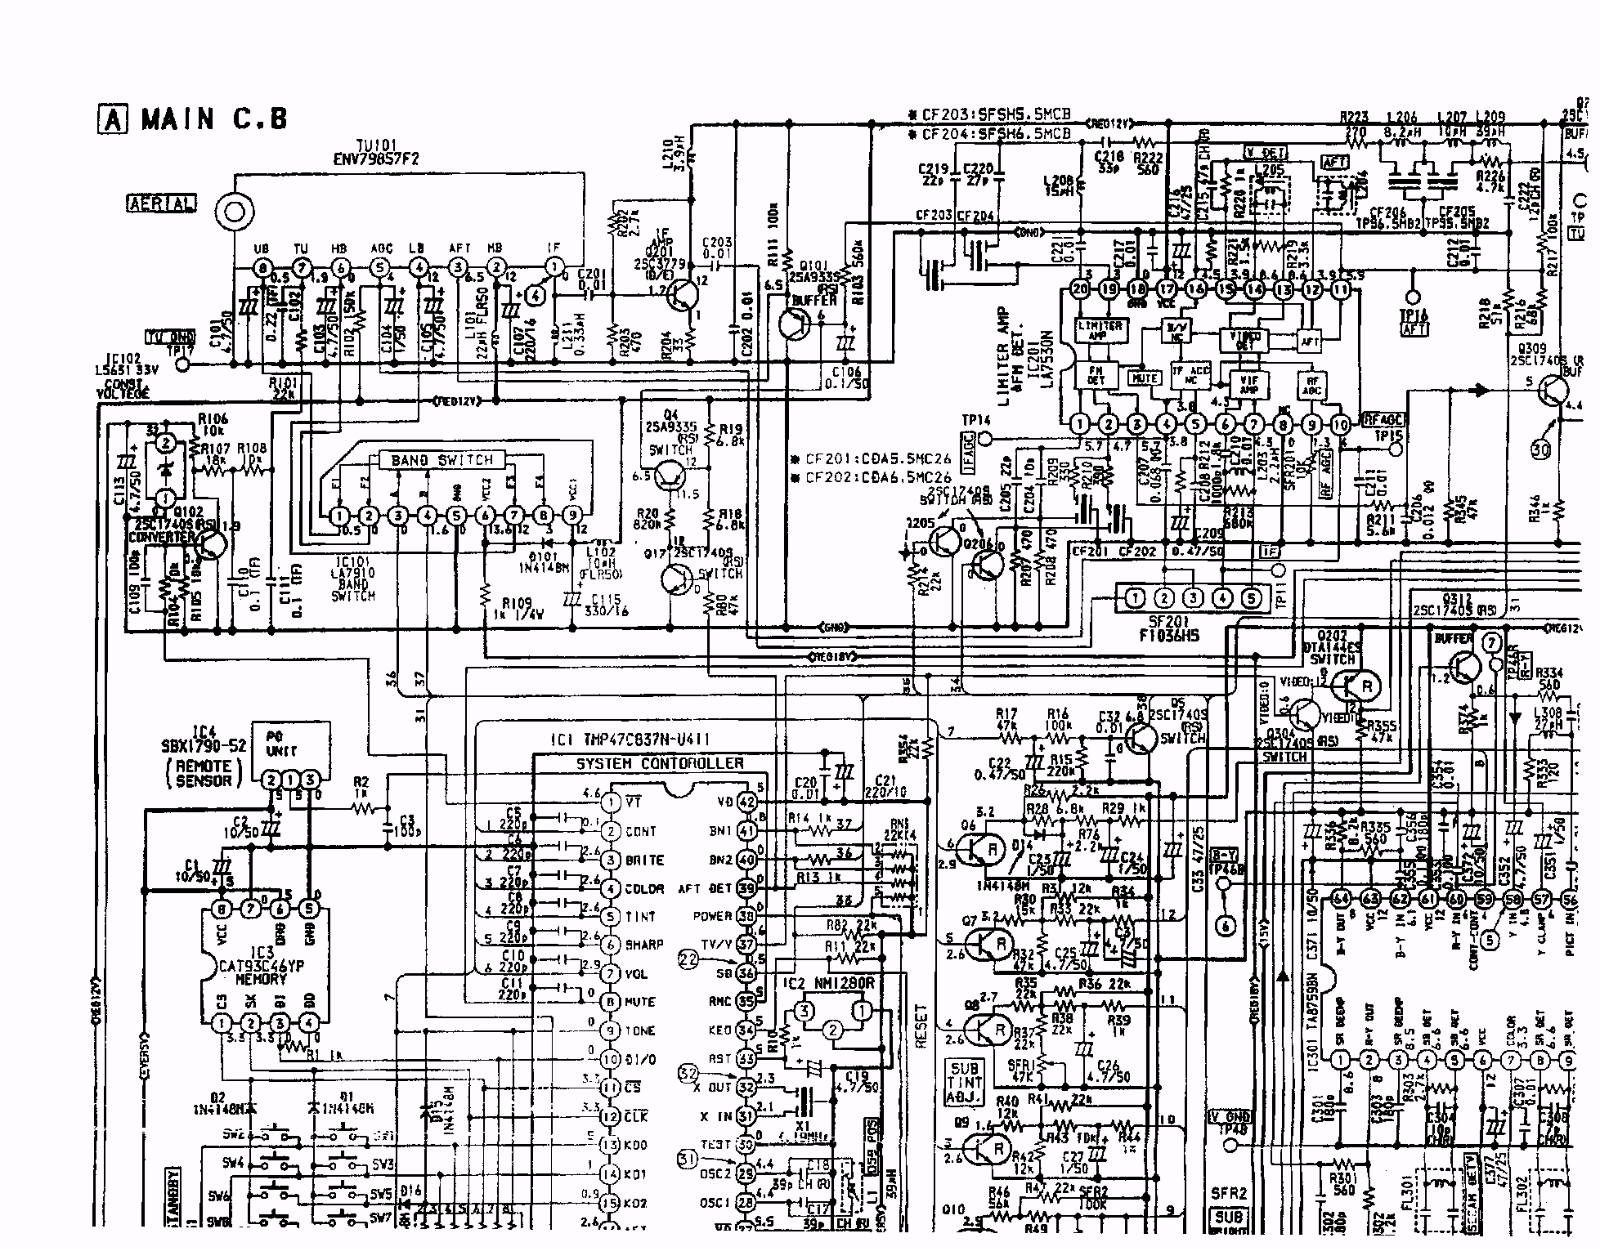 Aiwa tv201, c201 schematic